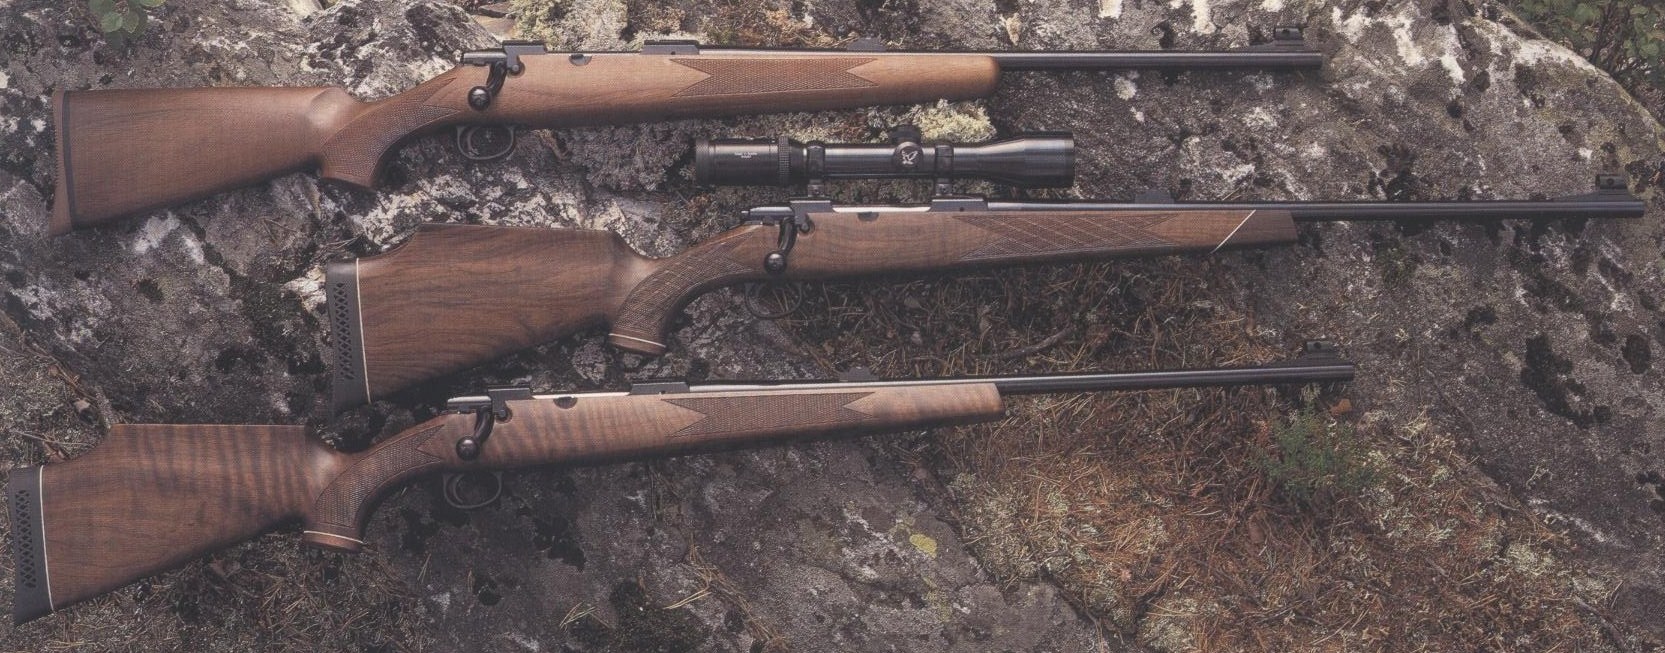 ./guns/rifle/bilder/Rifle-Kongsberg-Lakelander-389-Affut-1.JPG